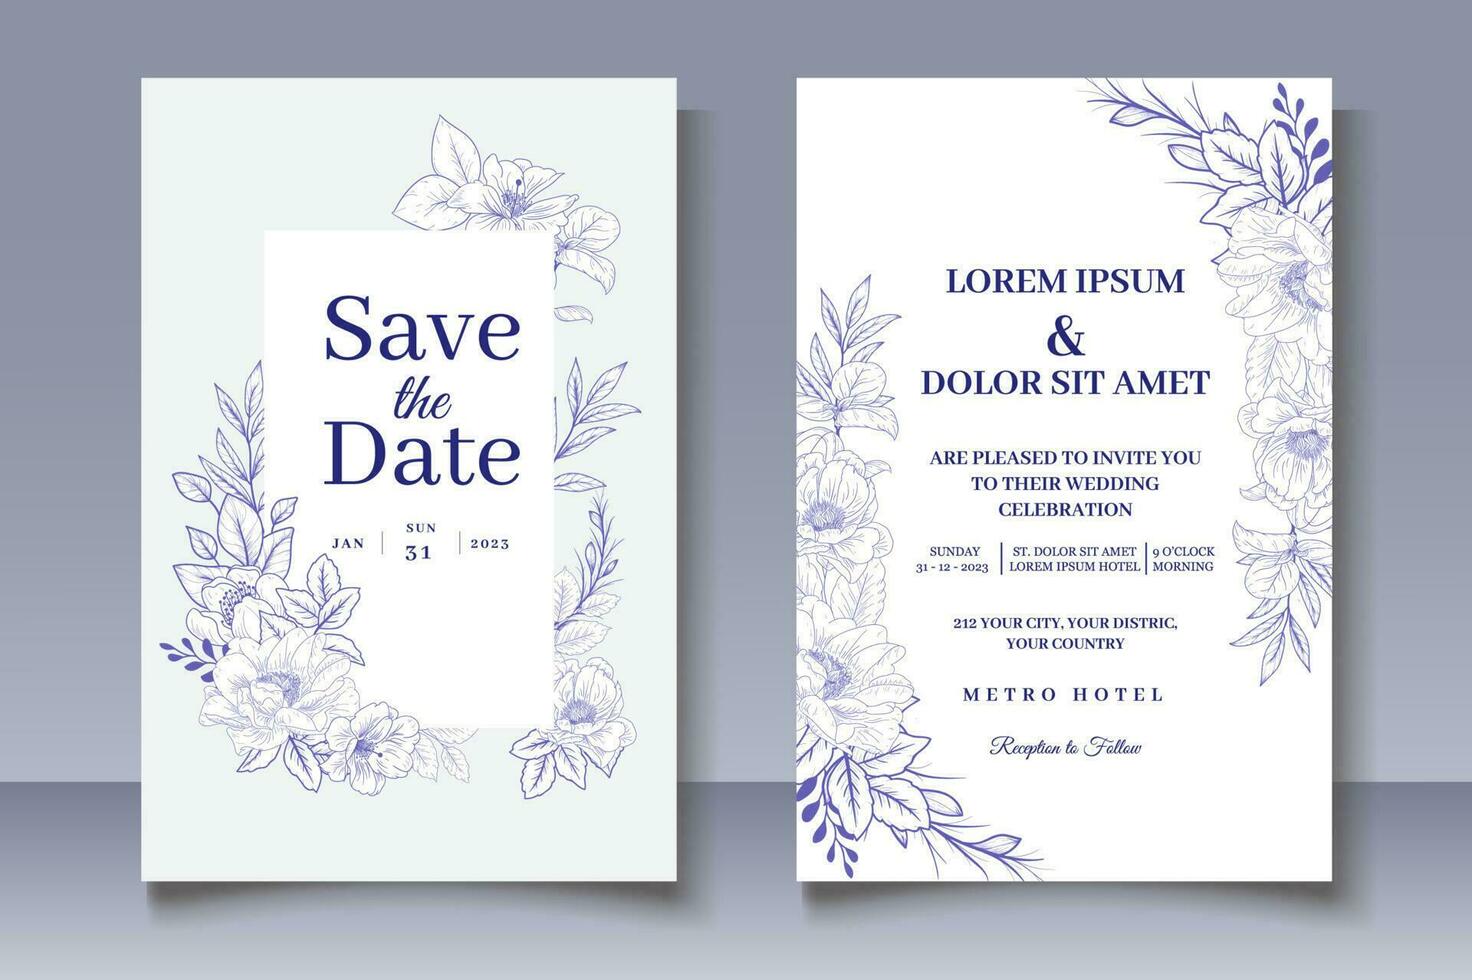 carta di invito a nozze con decorazioni floreali disegnate a mano vettore